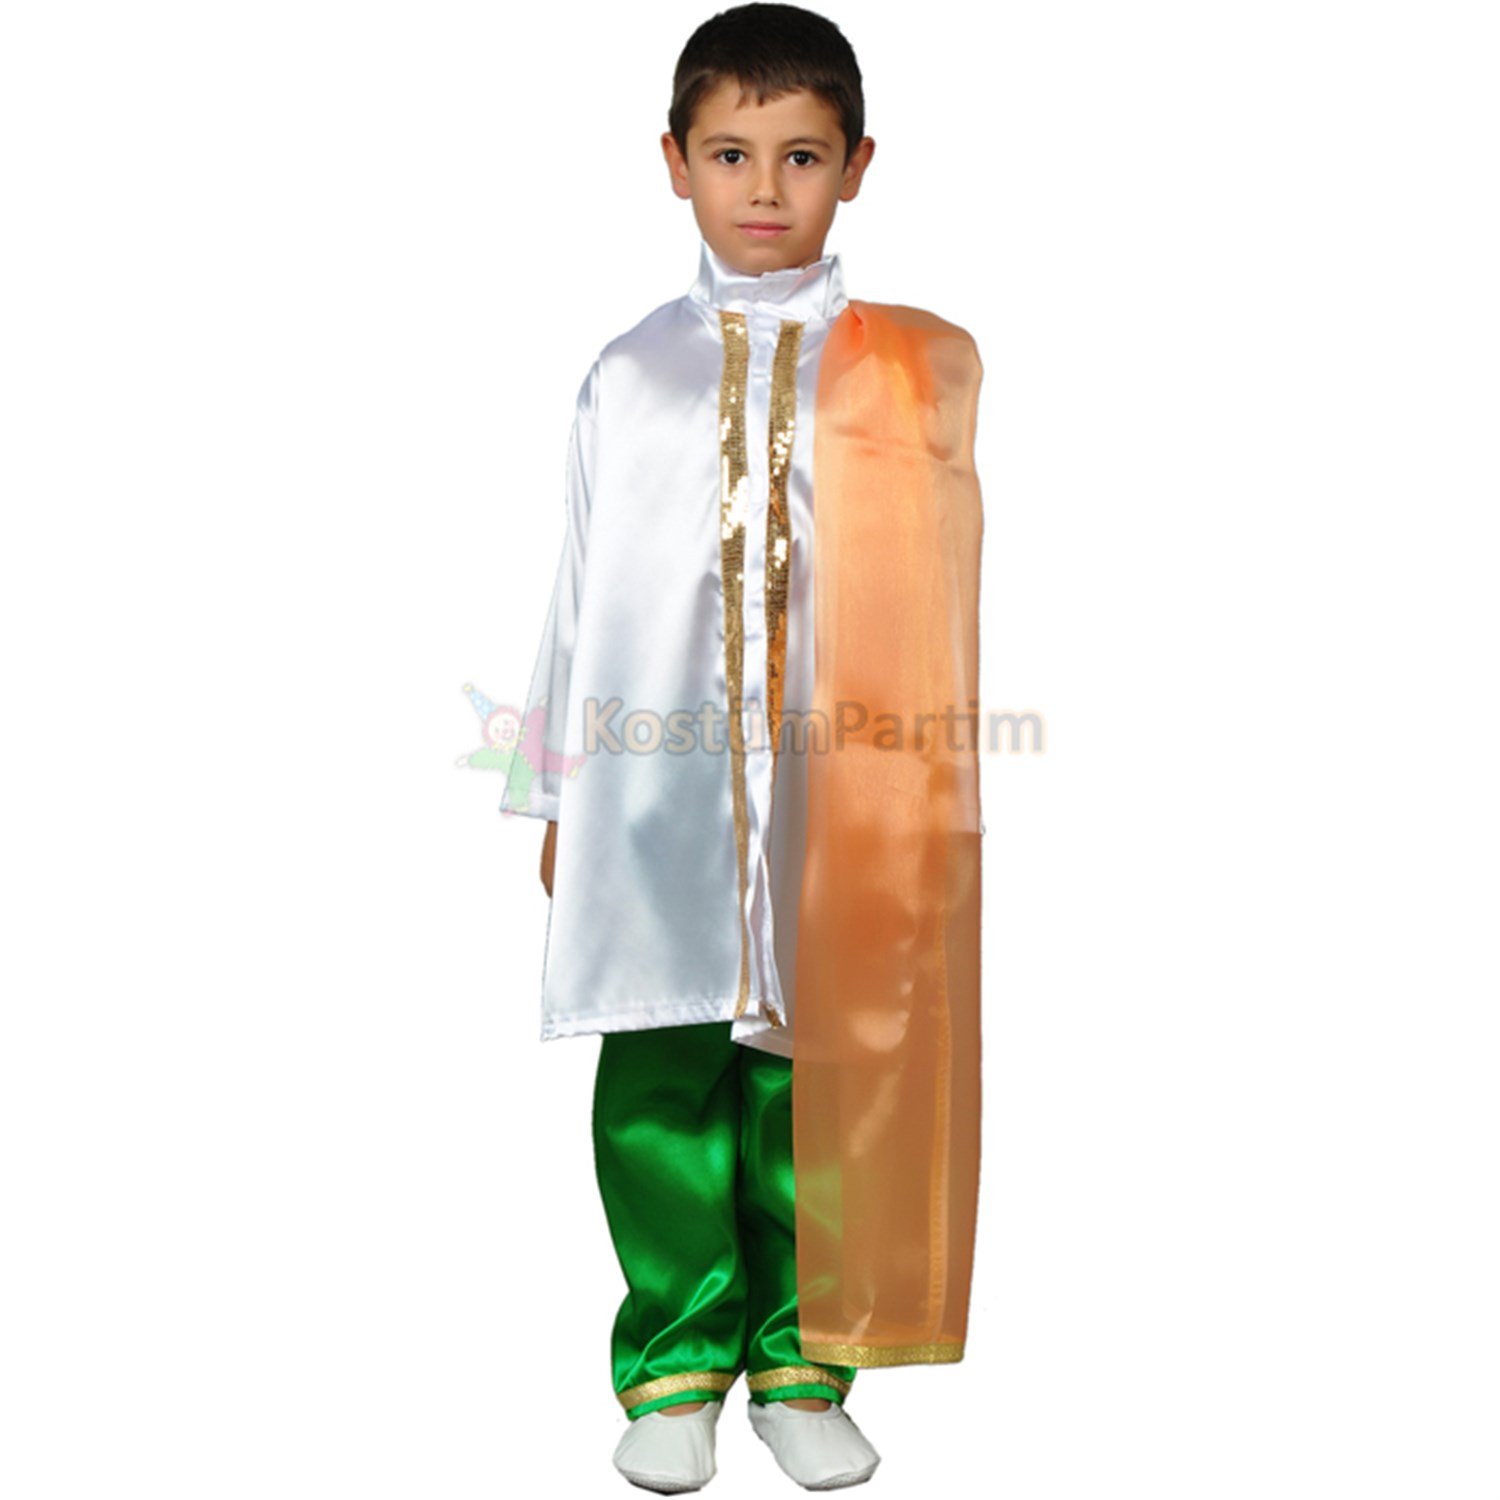 Hintli Kostümü Erkek Çocuk Yeşil - KostümPartim®